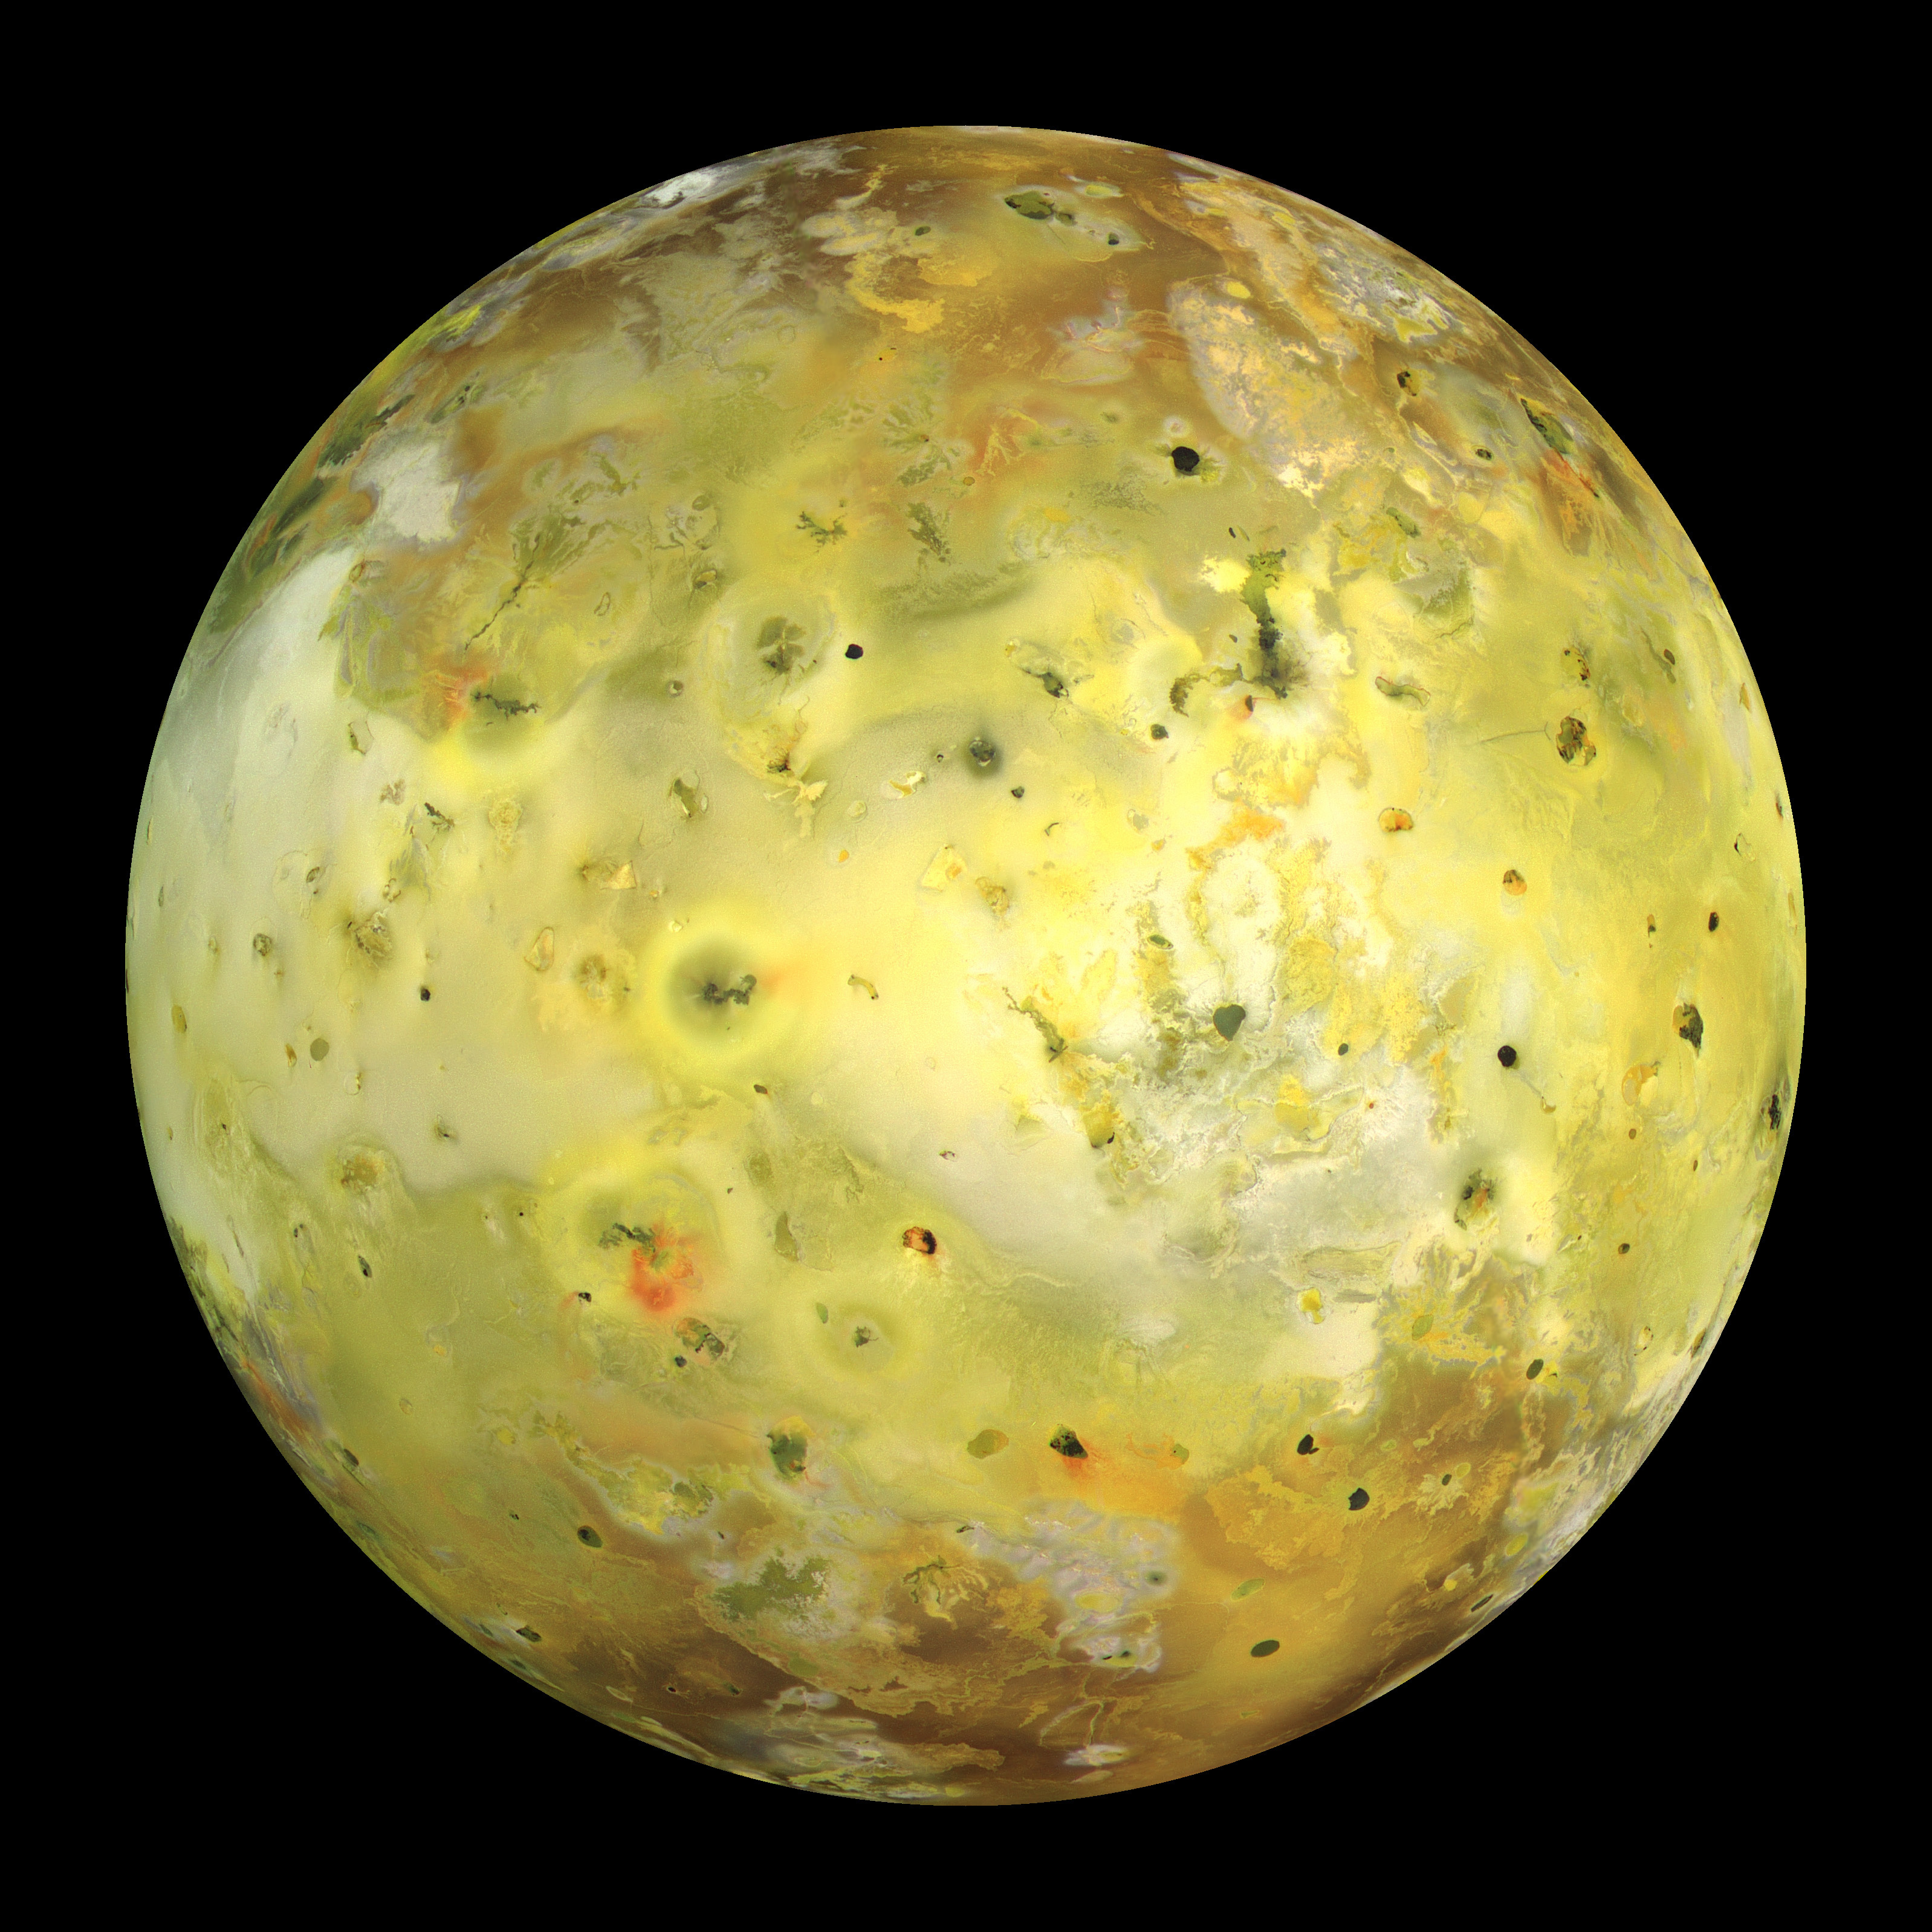 Månen Io är den tredje största av Jupiters månar